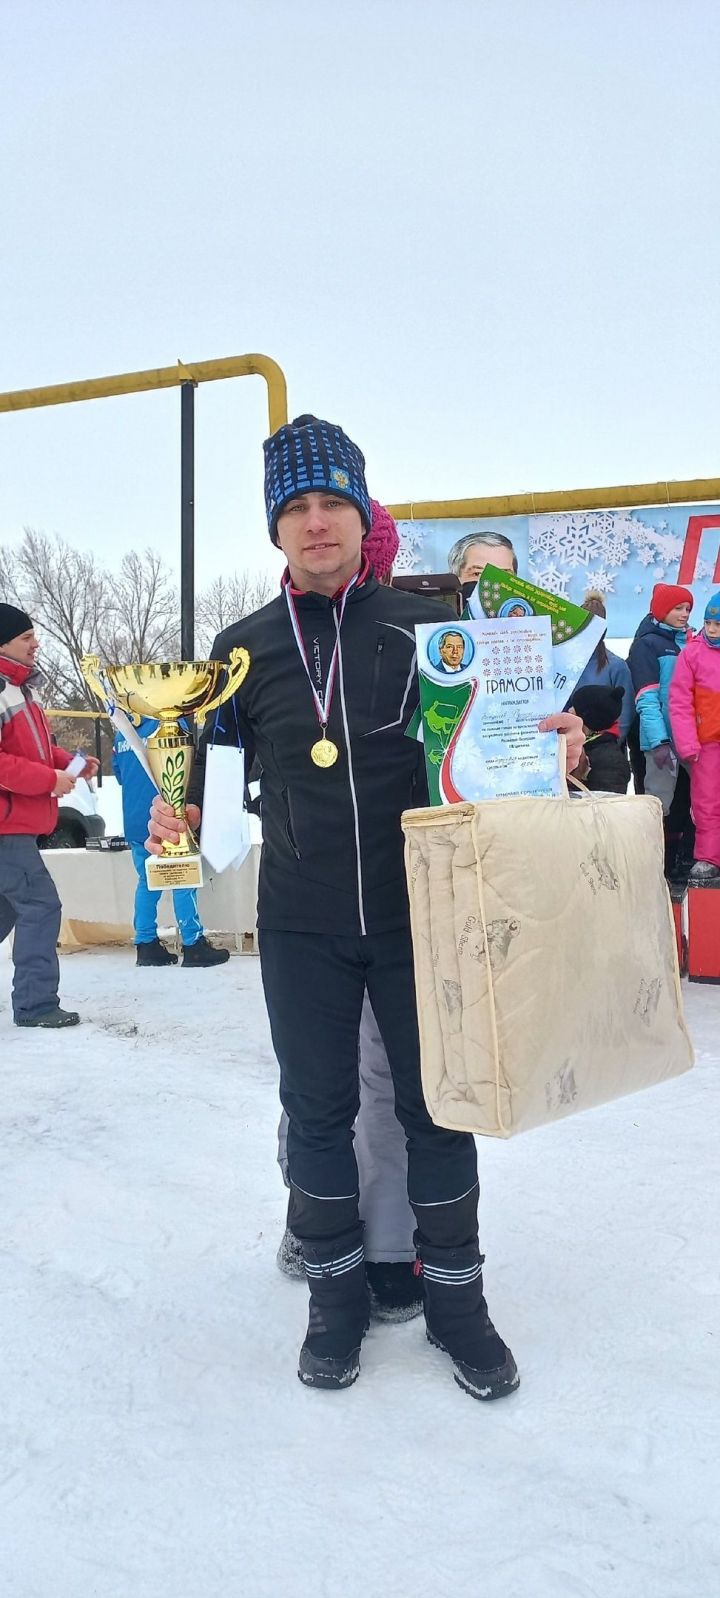 Аксубаевские лыжники завоевали серебро в общекомандном зачете на зональных соревнованиях в Нурлатском районе